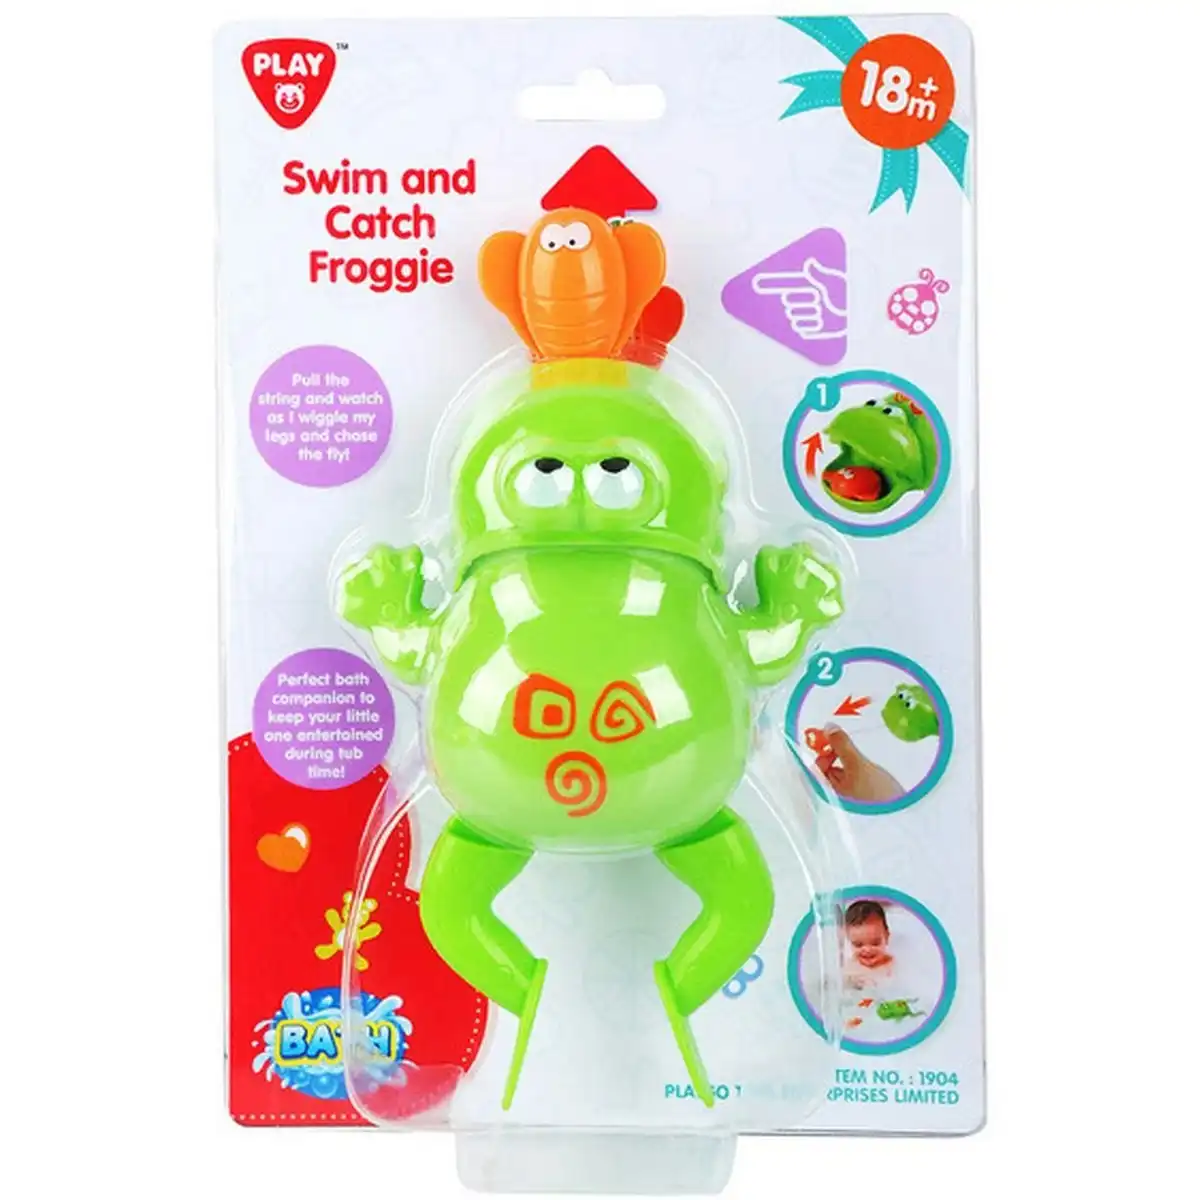 Playgo Toys Ent. Ltd. - Swim And Catch Froggie Bath Toy